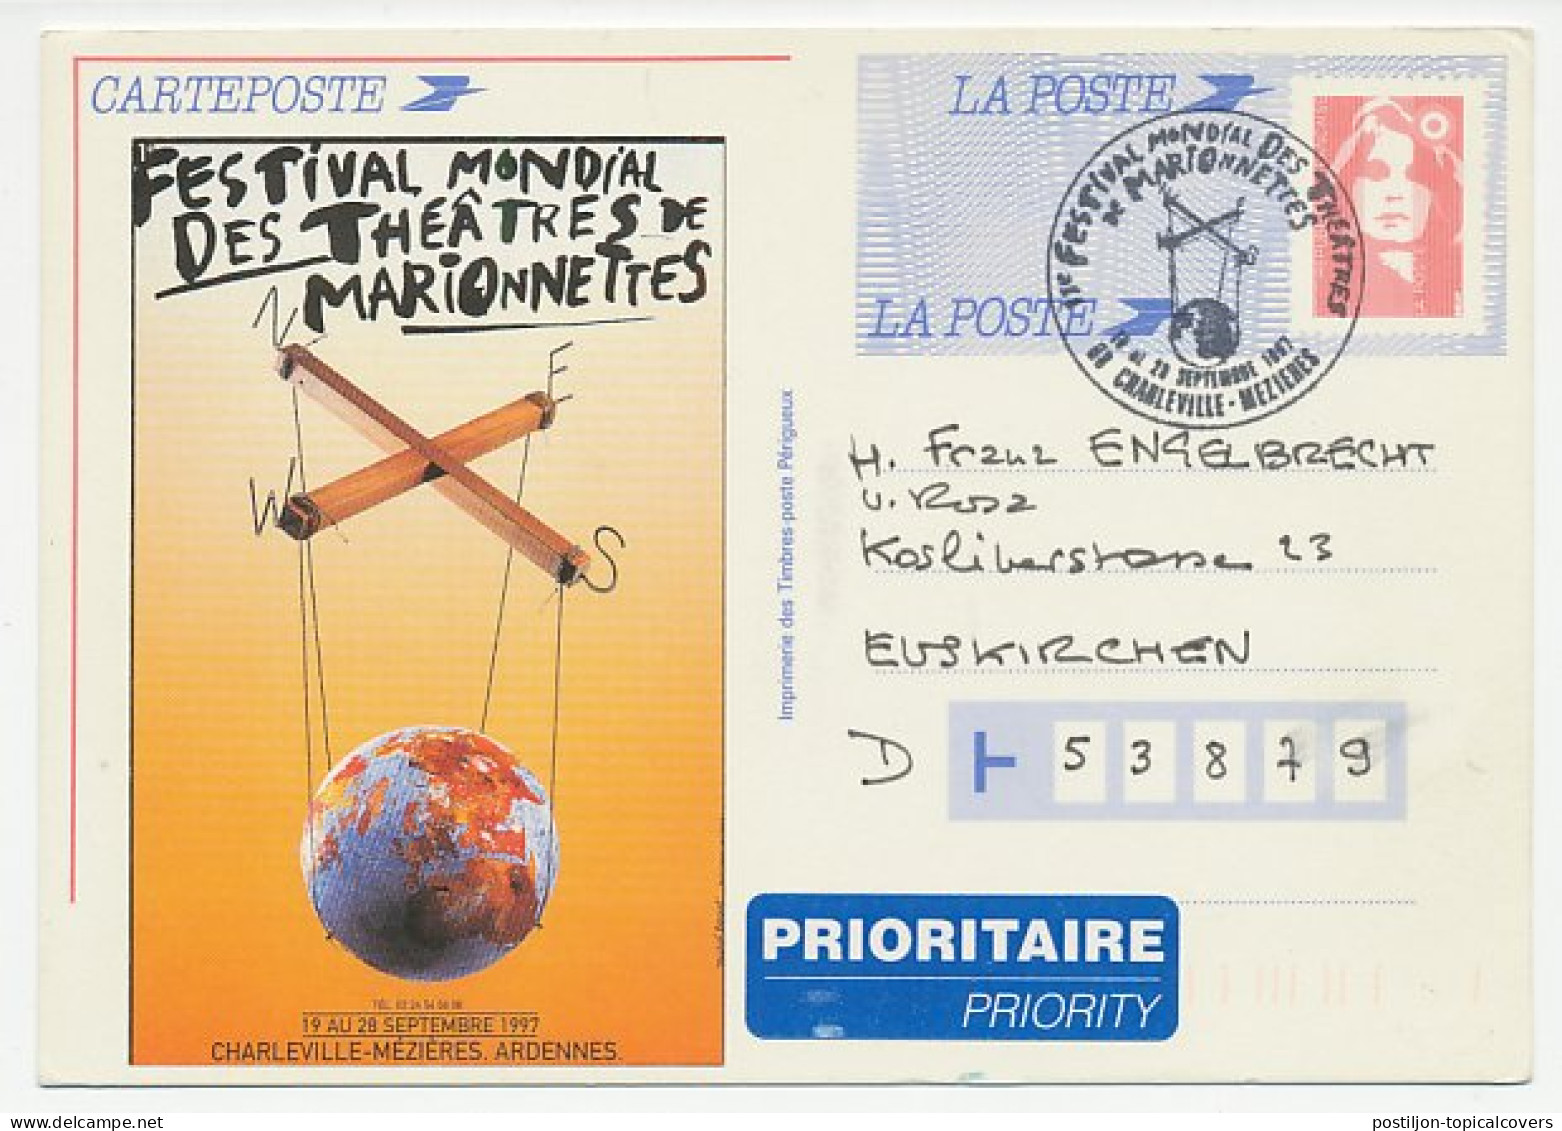 Postal Stationery / Postmark France 1997 World Festival - Marionette - Puppet. Globe On Left Side Is Vignette - Not Pri - Teatro